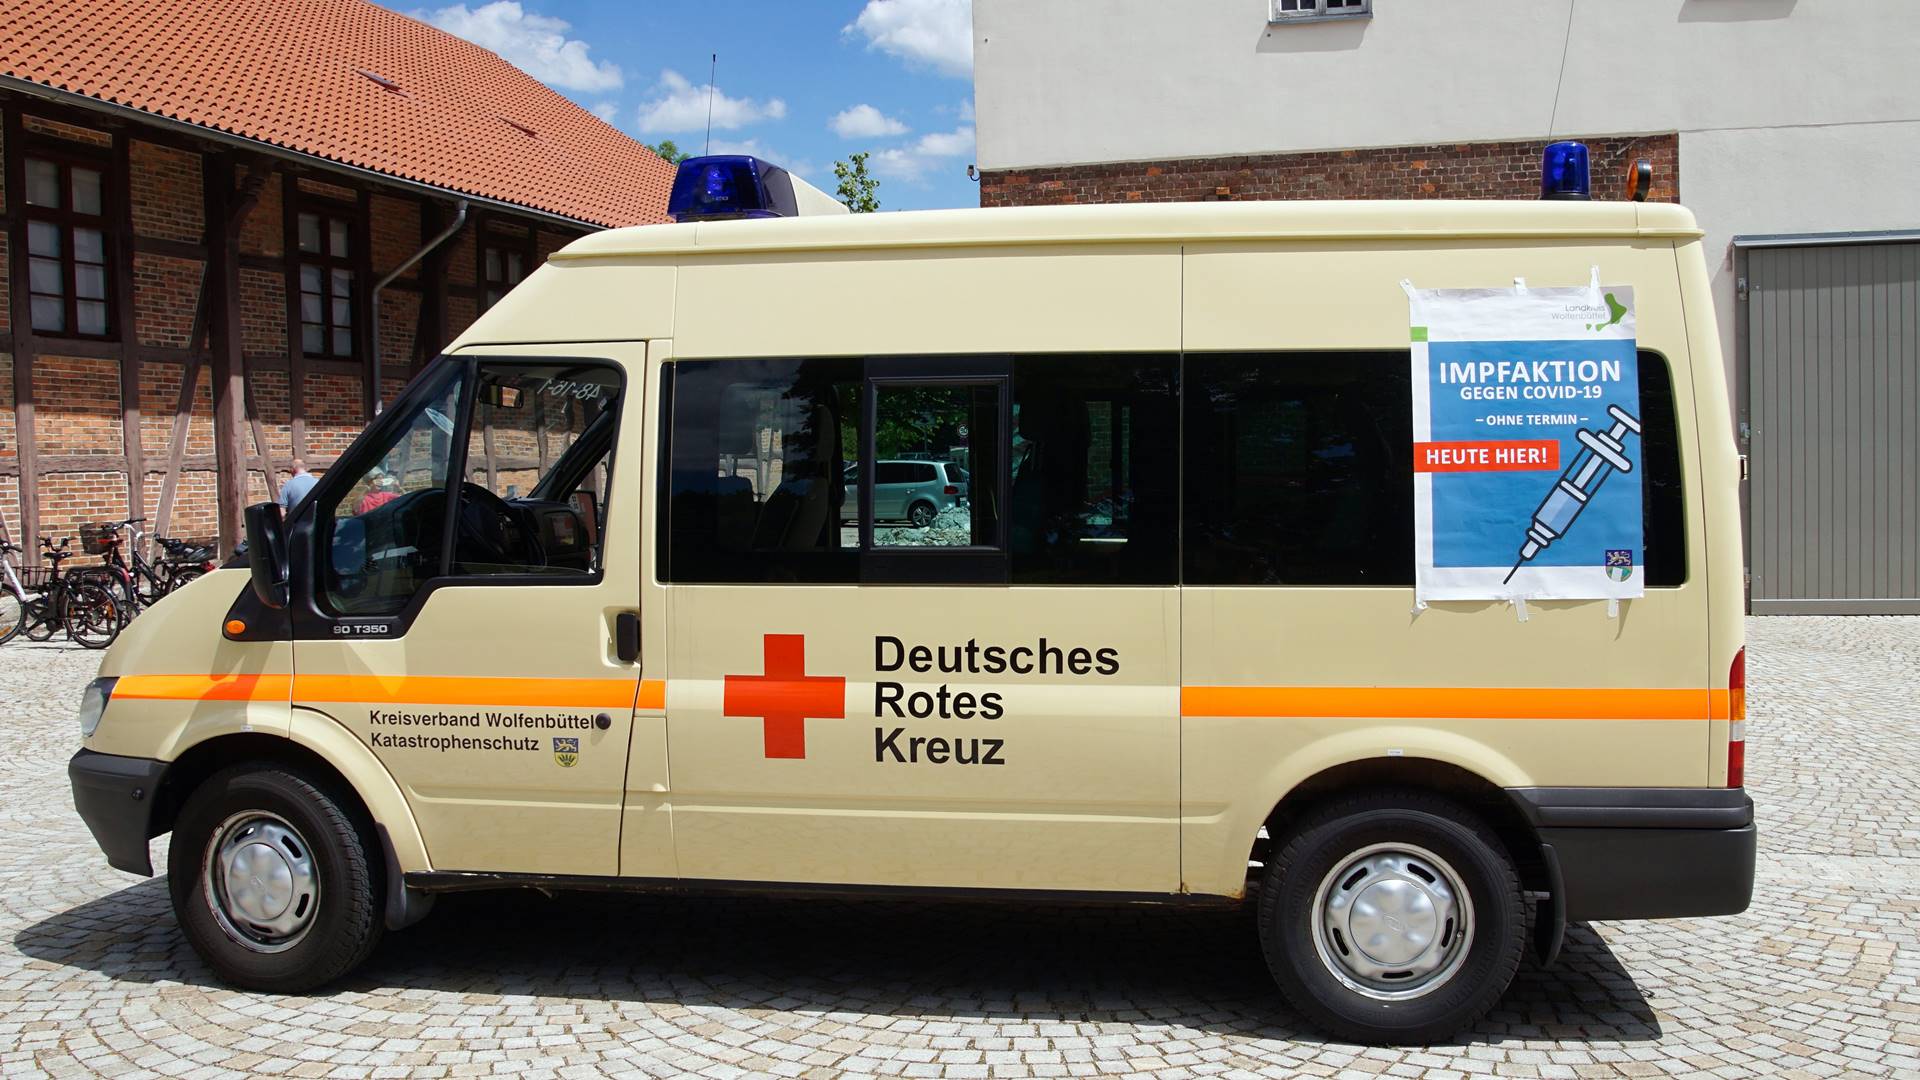 Kleinbus vom Deutschen Roten Kreuz mit einem Plakat mit Hinweisen zur Impfaktion gegen Covid-19 "Ohne Termin" und "heute hier".